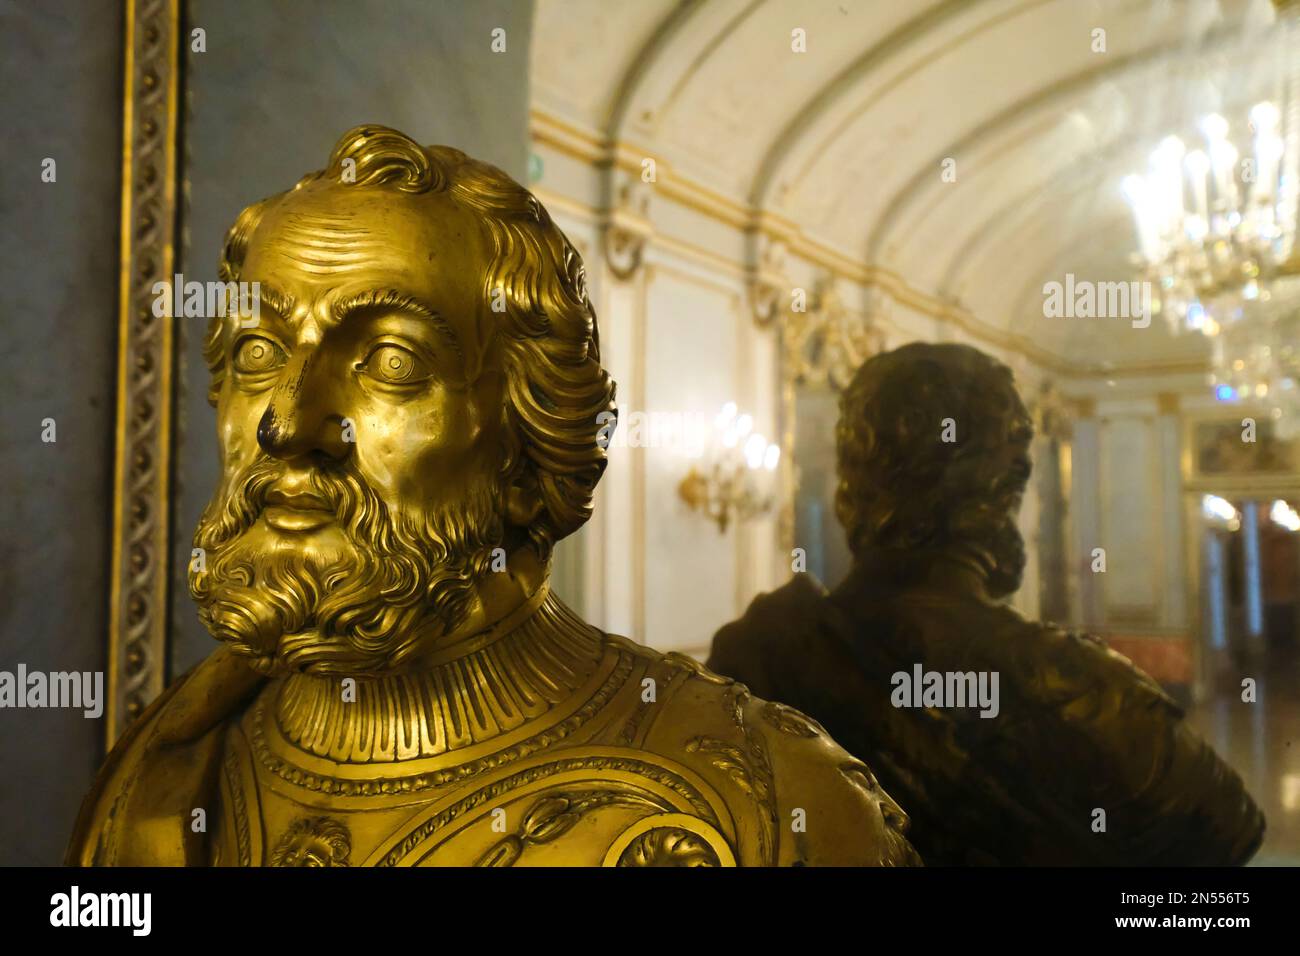 Un buste en or, sculpture de la tête d'un homme barbu devant un miroir. Au musée du manoir, Museo Pignatelli à Naples, Naples, Italie, Italie. Banque D'Images